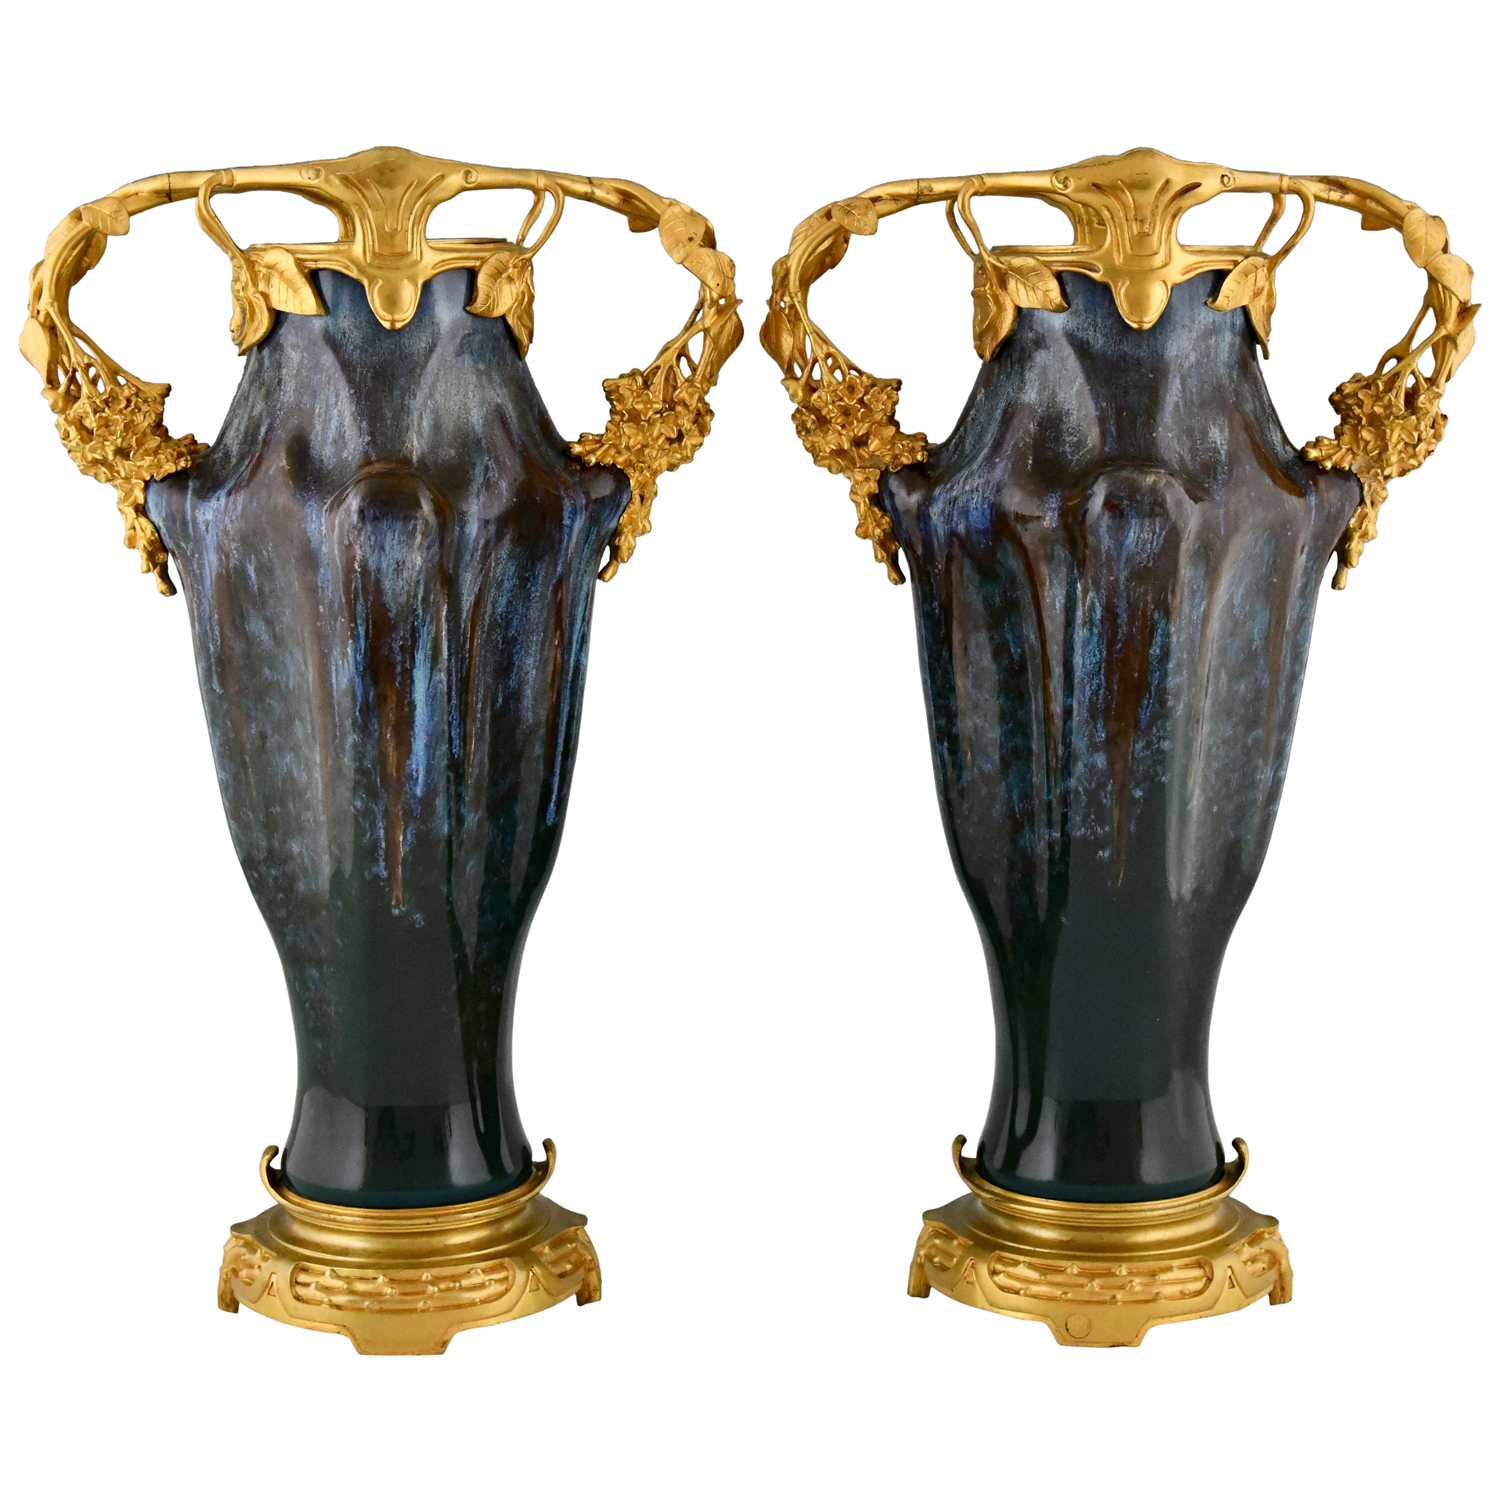 Art Nouveau vases Louchet bronze ceramic